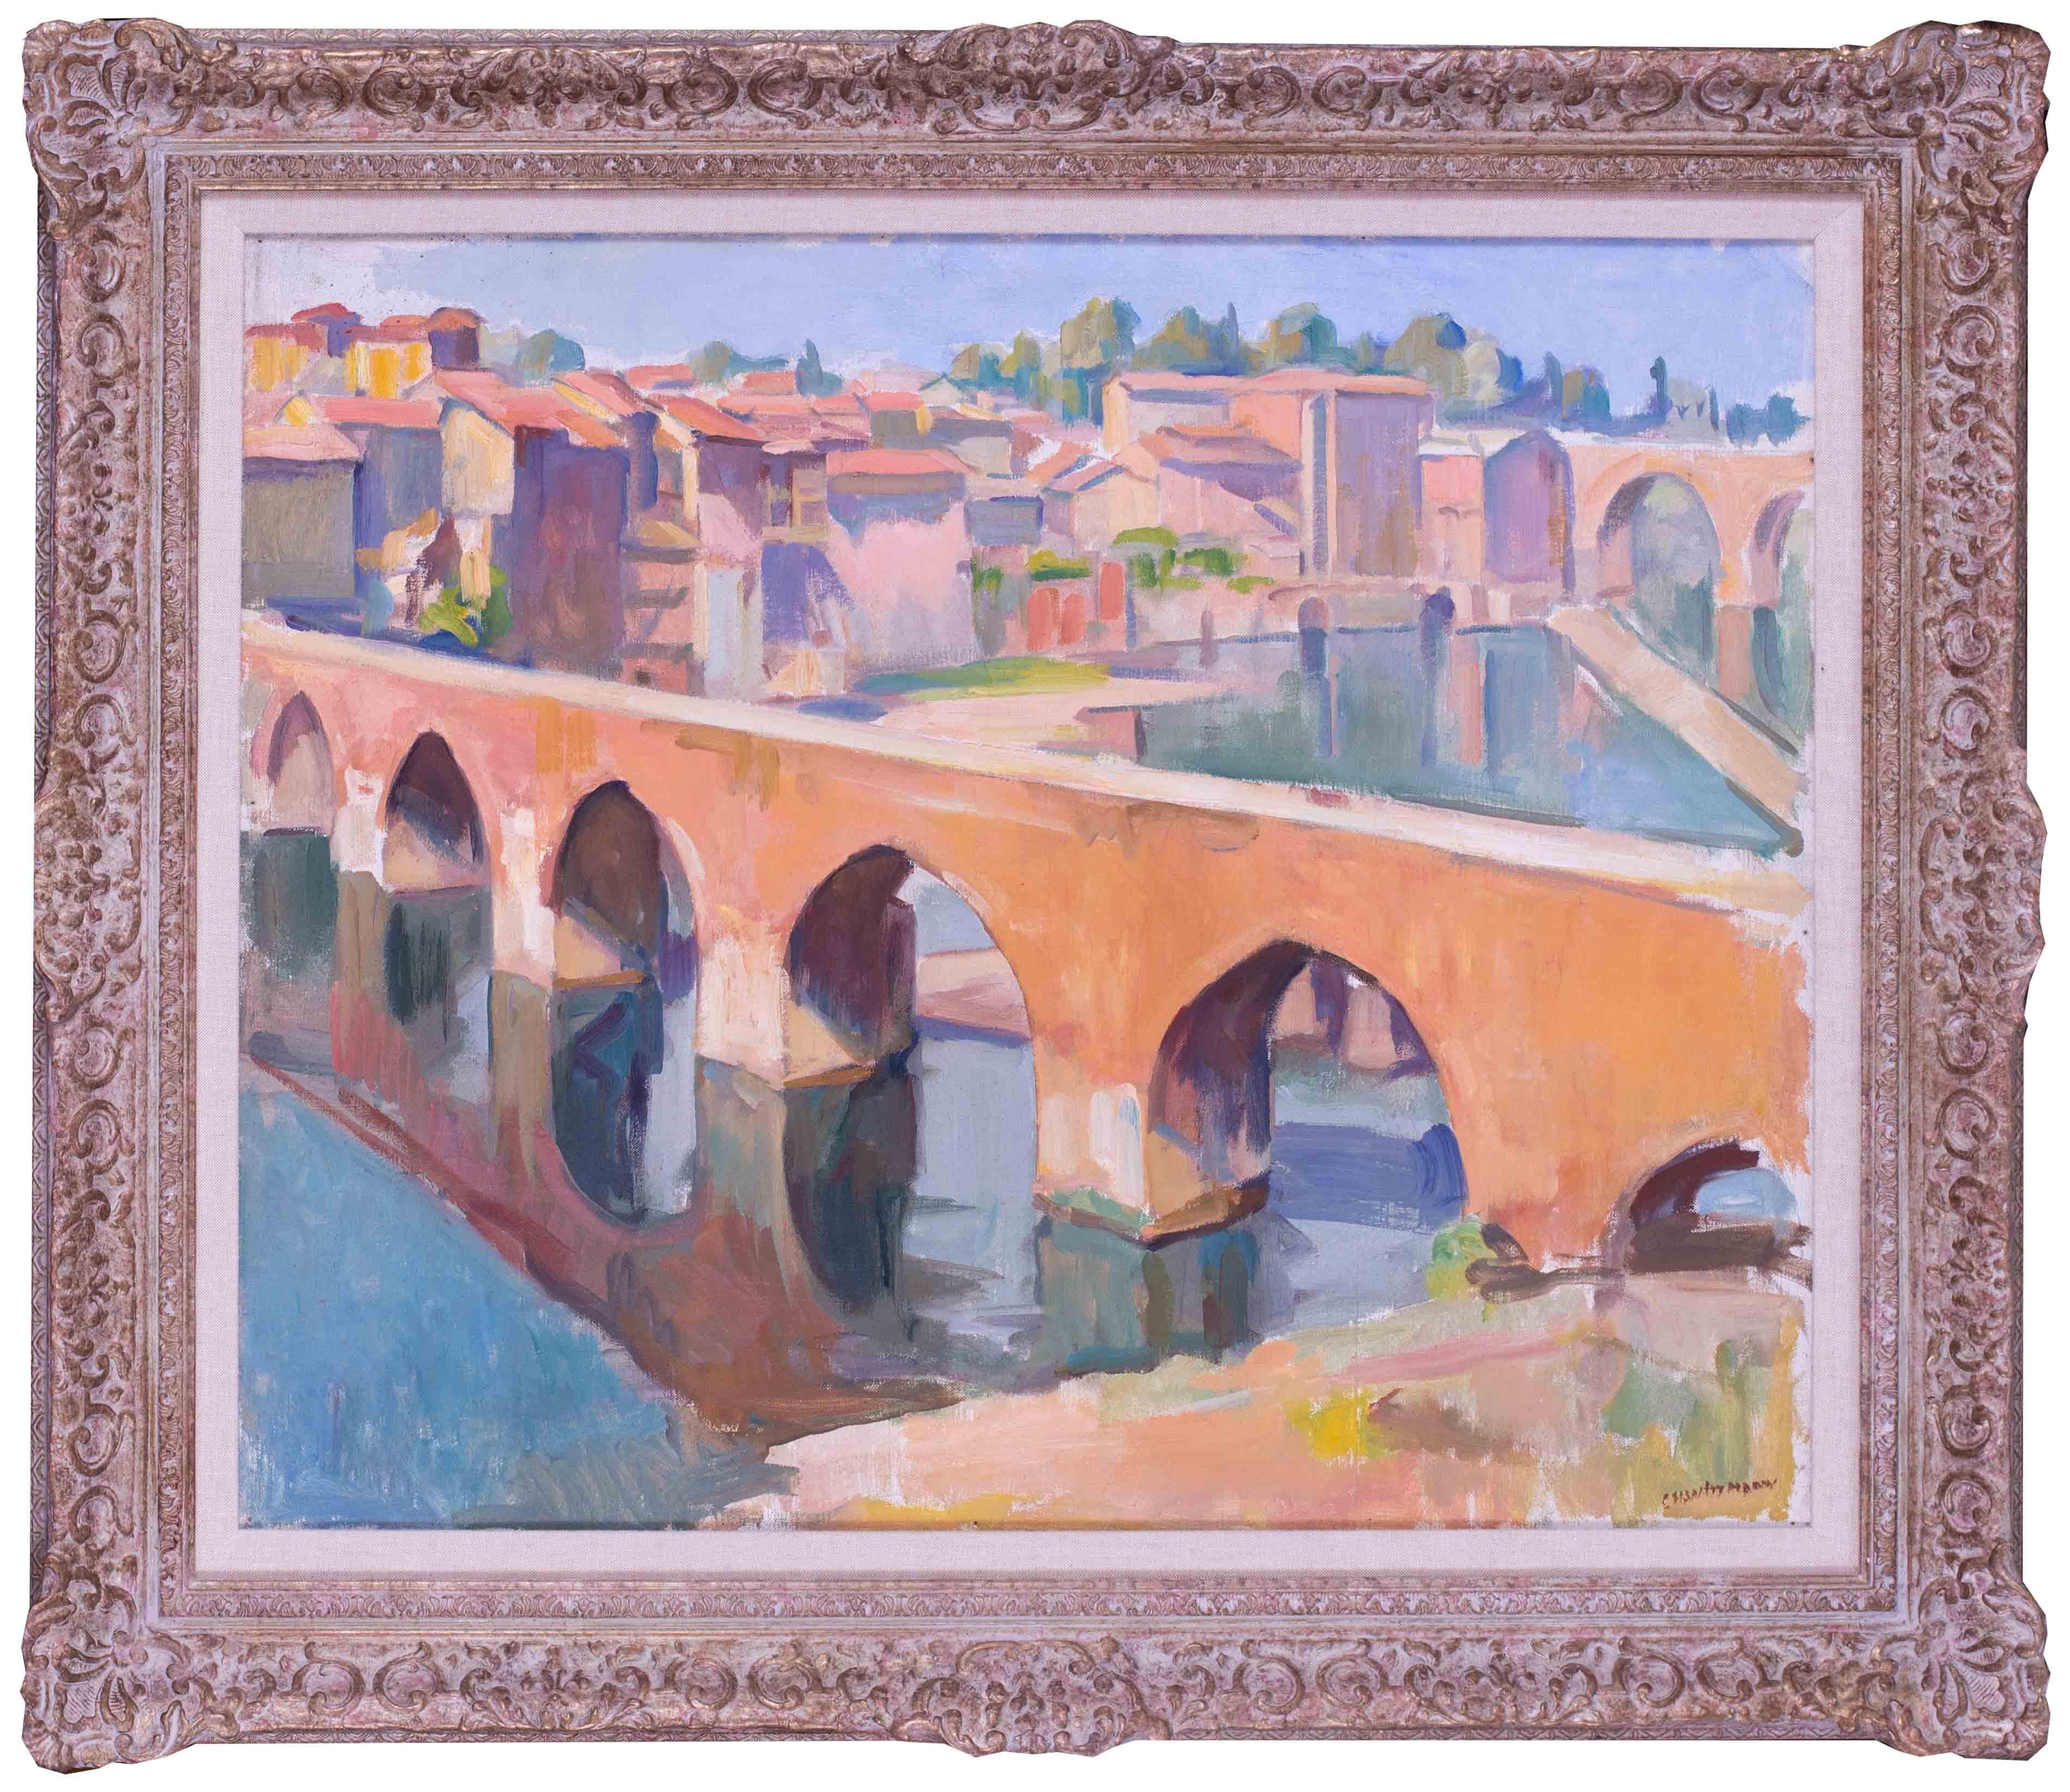 Landscape Painting Charles Wittmann - Peinture post-impressionniste française du pont d'Albi, France, par Wittmann